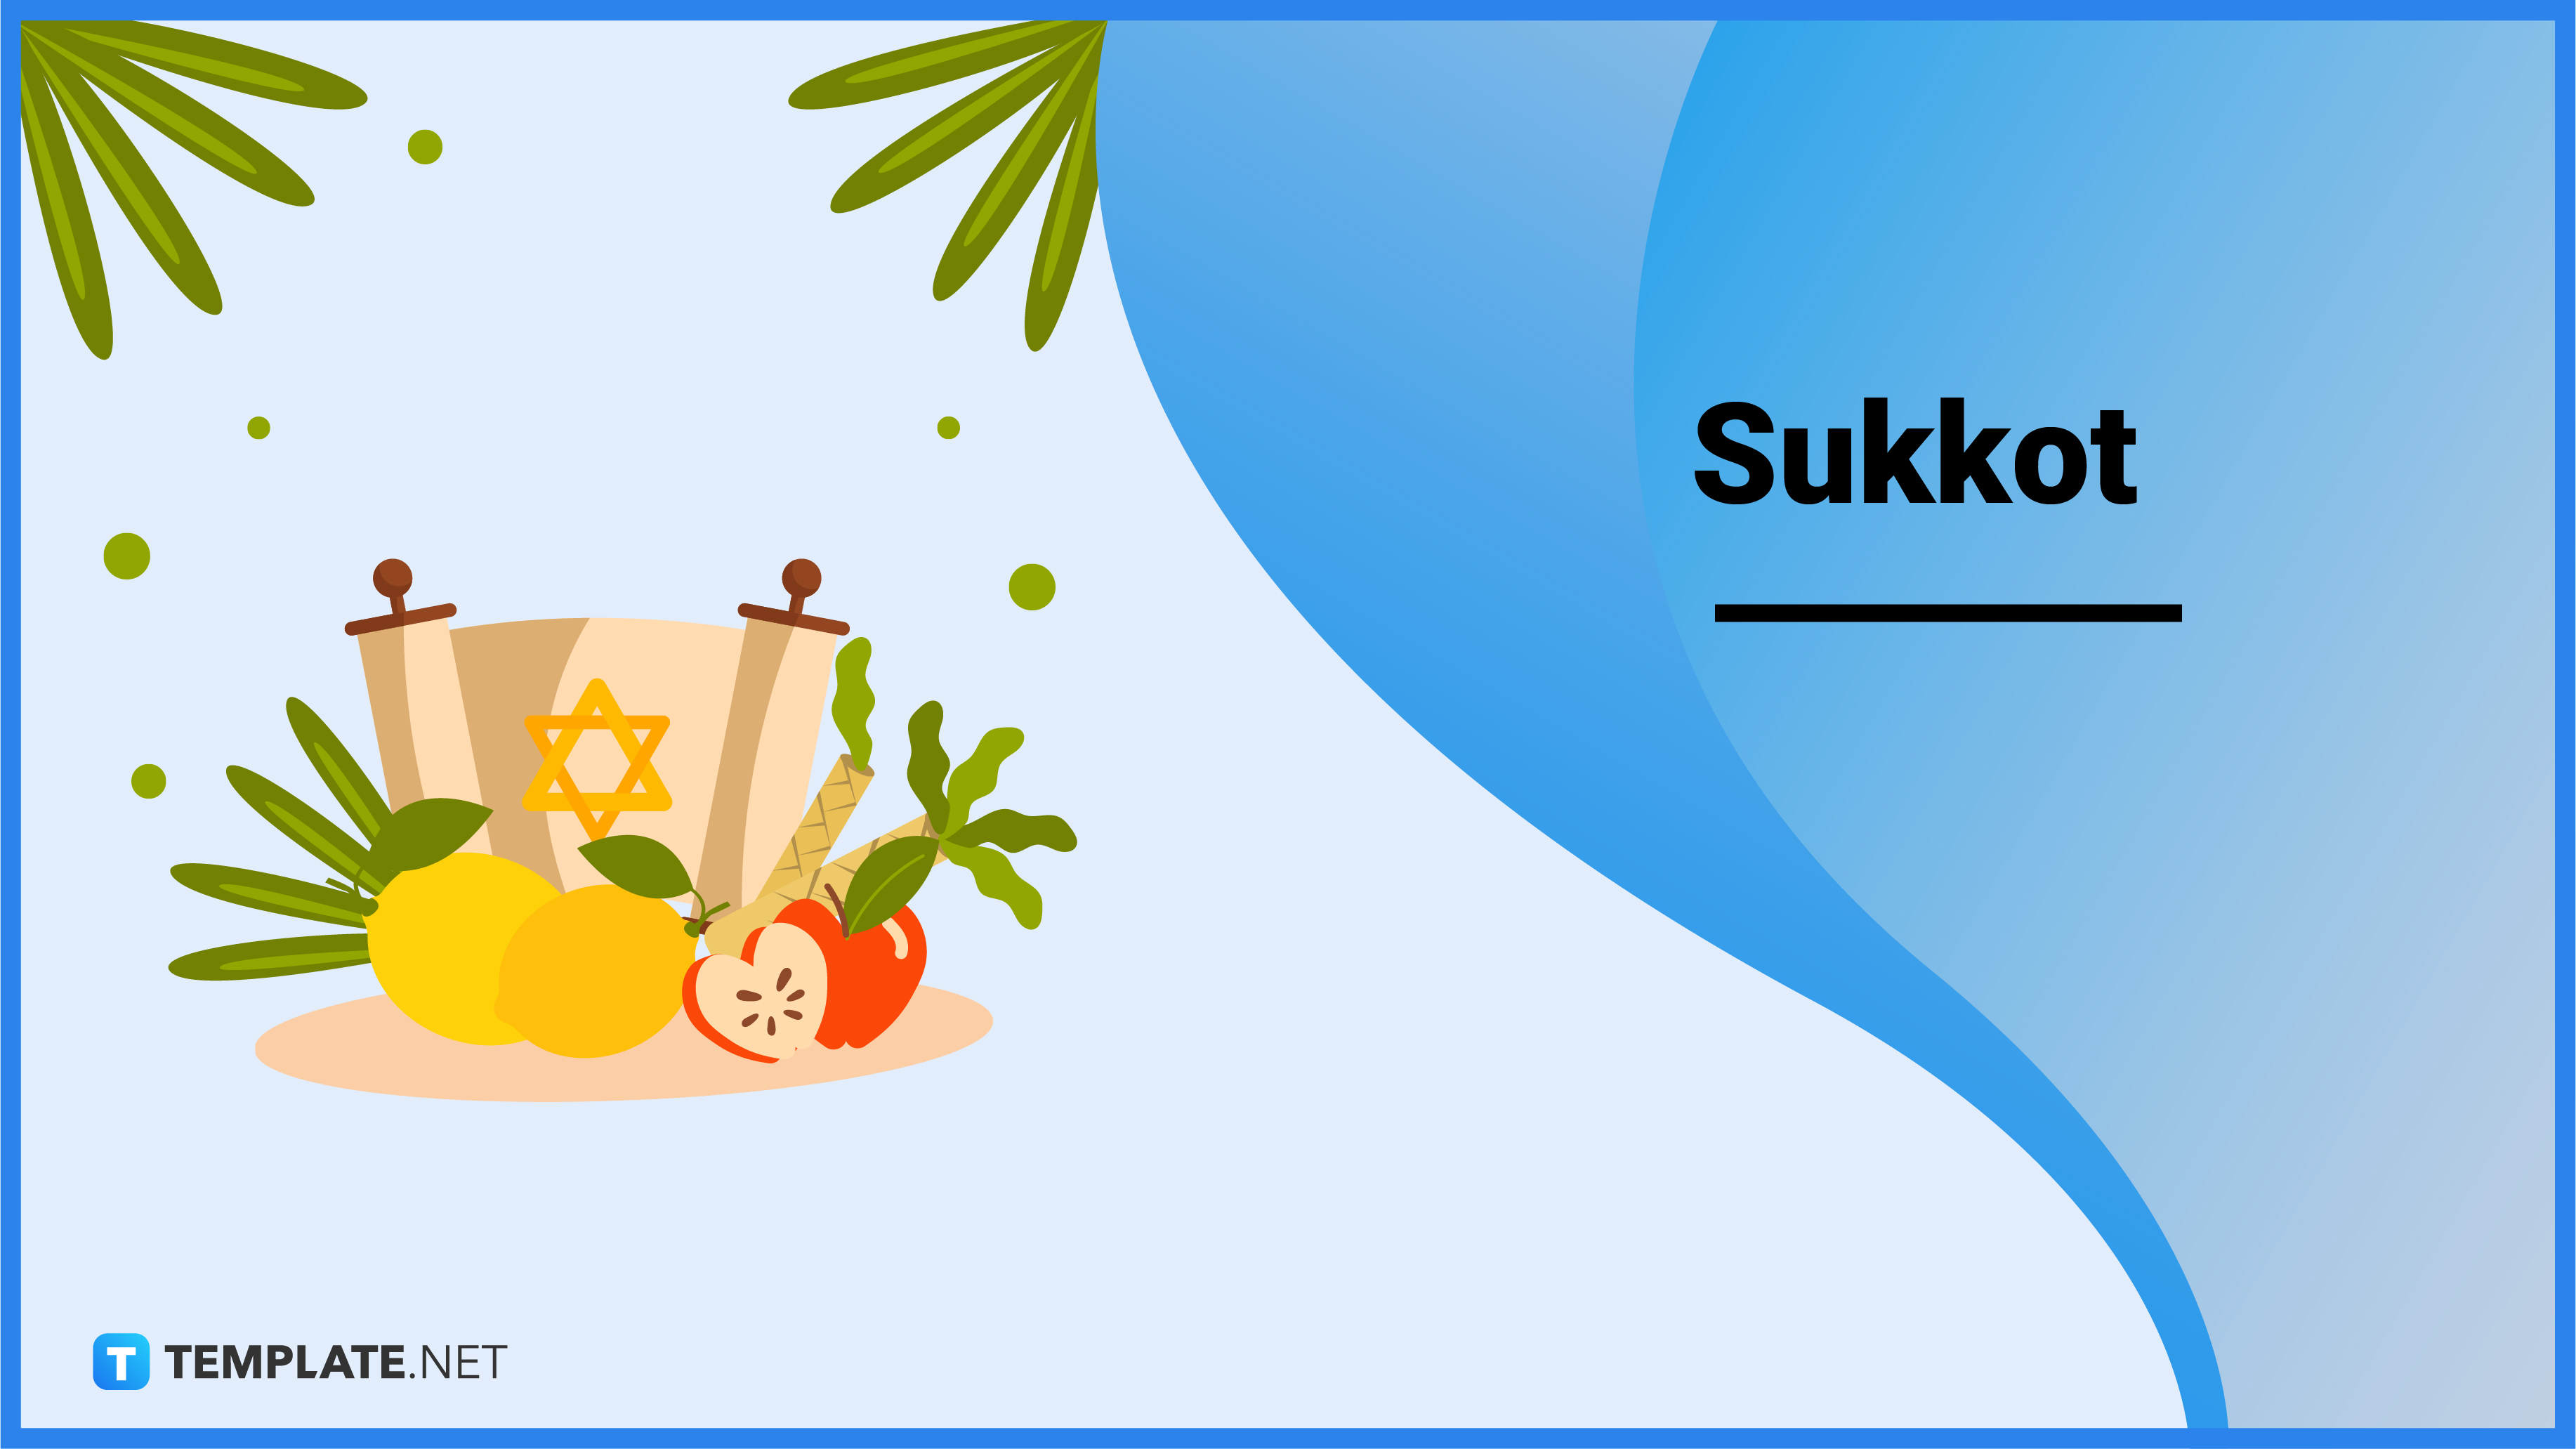 Sukkot When Is Sukkot? Meaning, Dates, Purpose